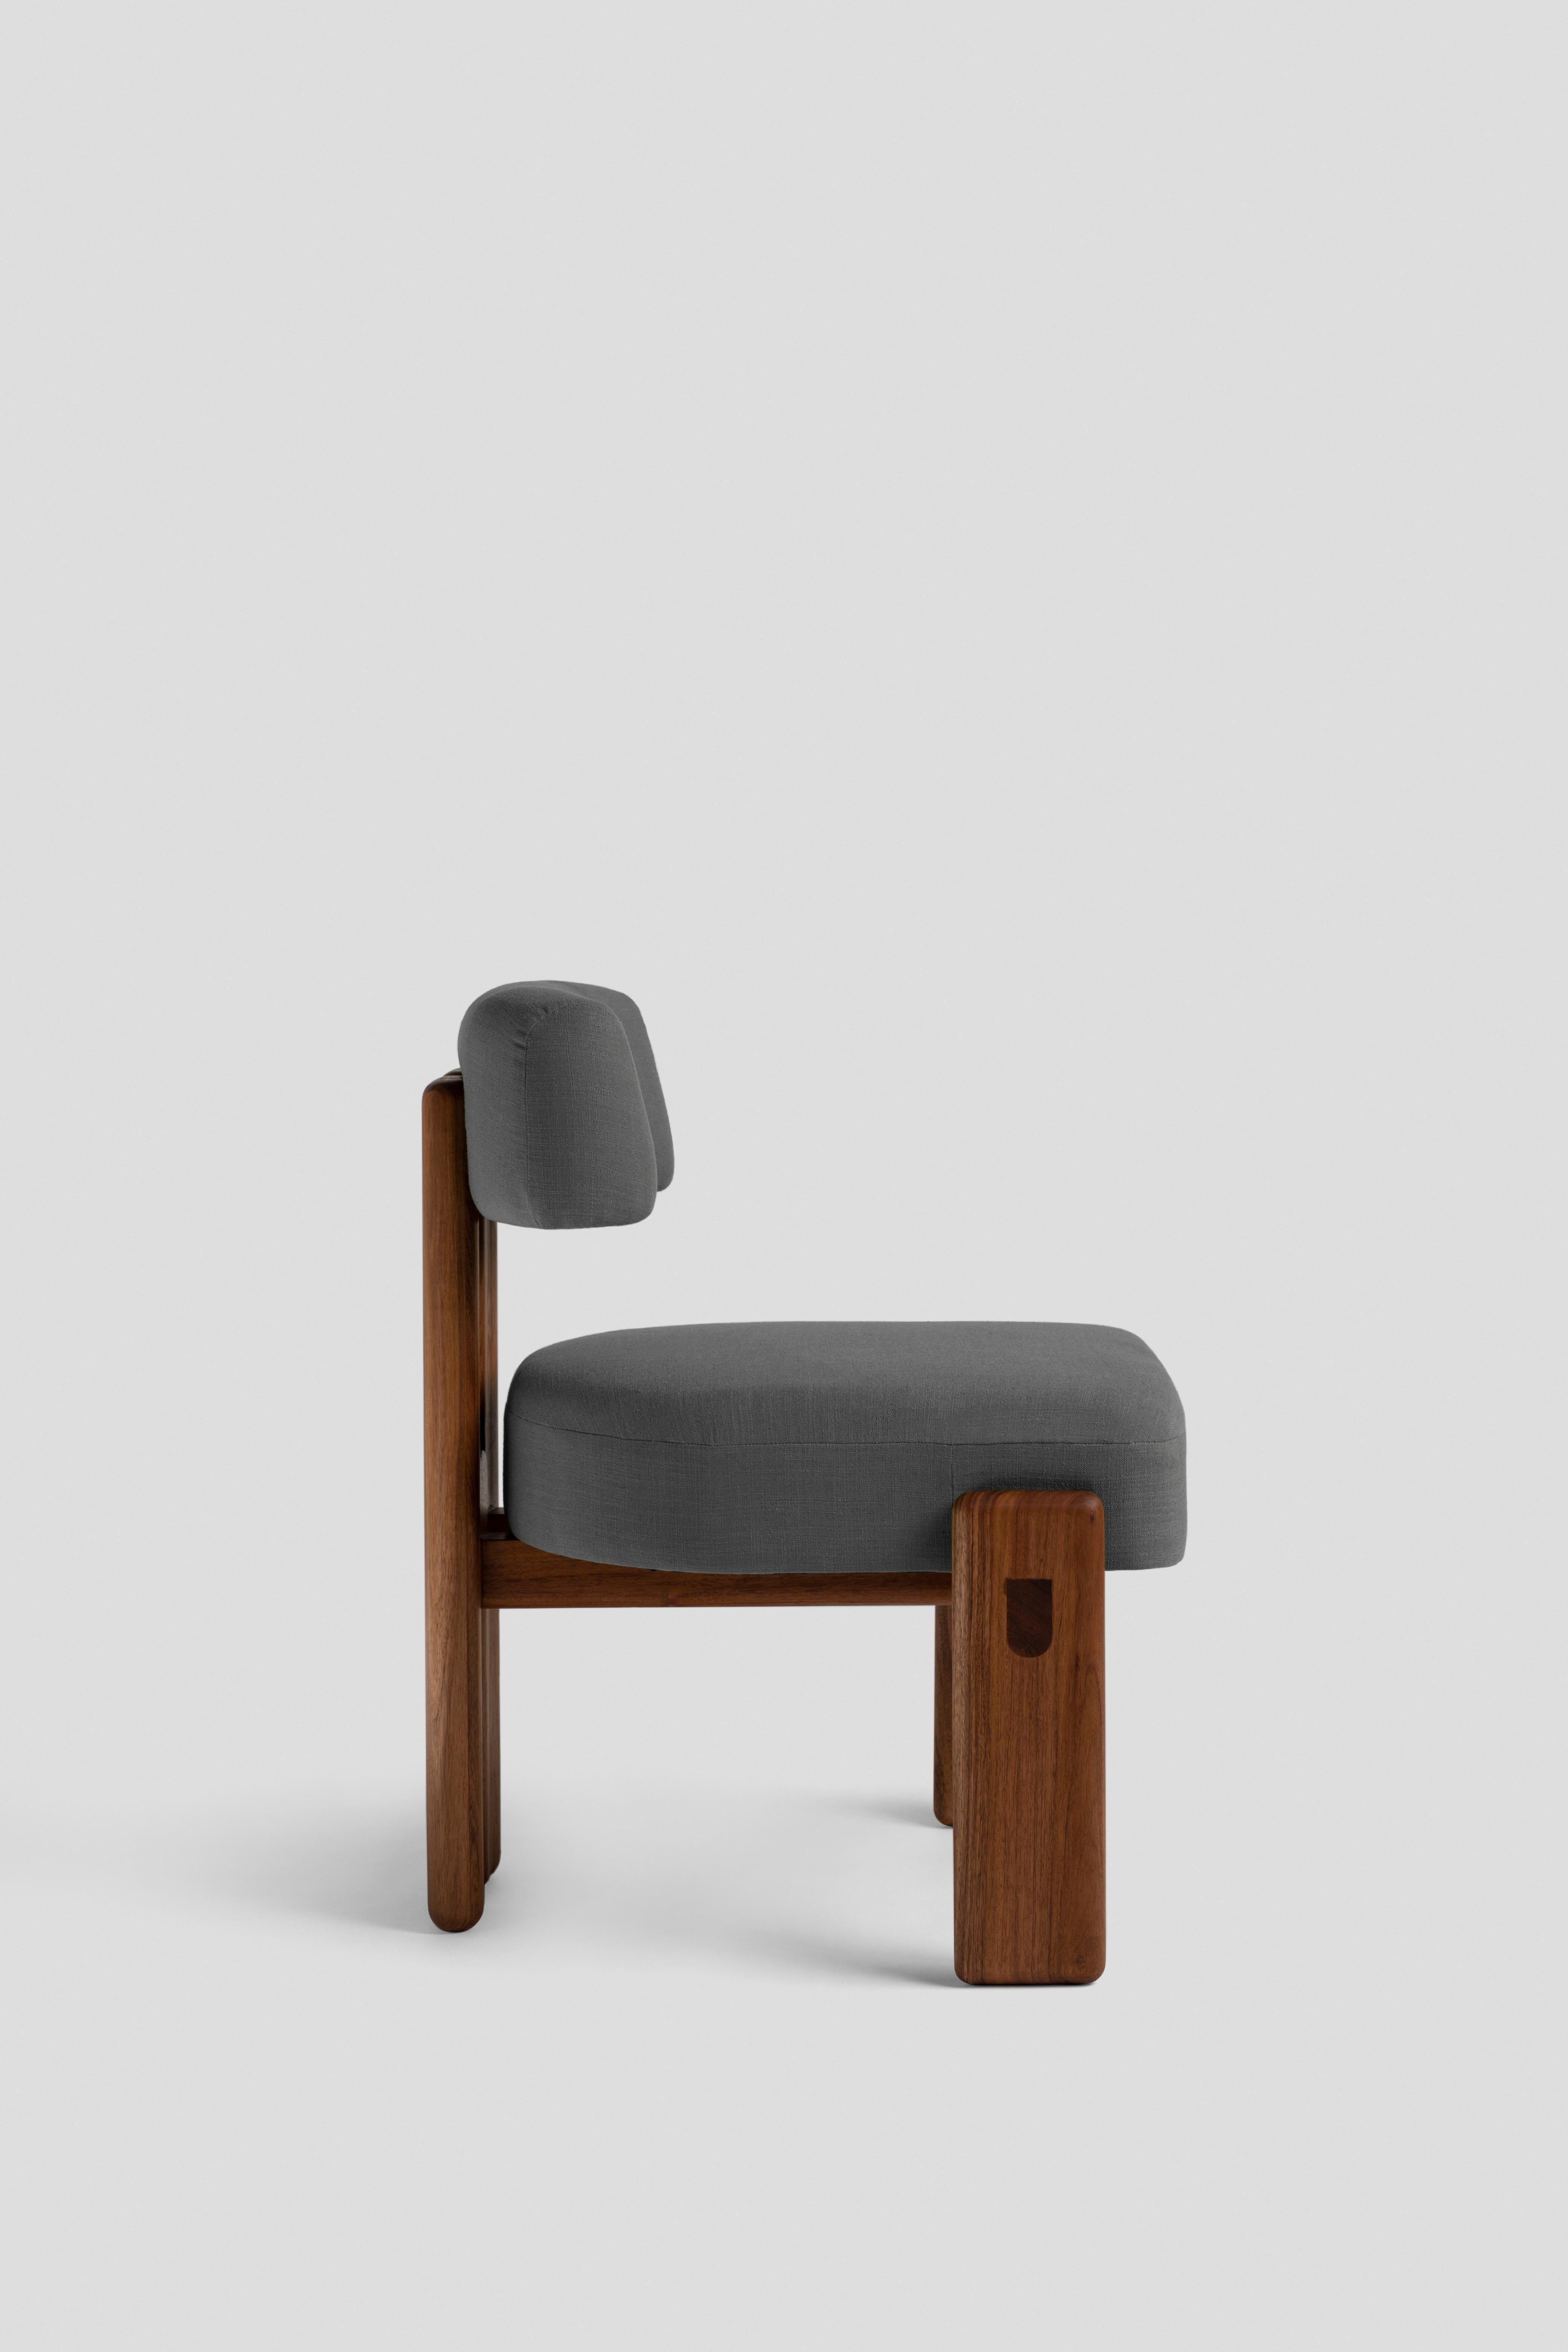 Stuhl mit gepolstertem Sitz und Rückenlehne aus Stoff.
Die halbmondförmige Rückenlehne schmiegt sich an den Rücken und stützt ihn. Inspiriert von den dreibeinigen Stühlen hat der Stuhl Peace ein Rückenbein, das aus zwei Teilen besteht, die durch